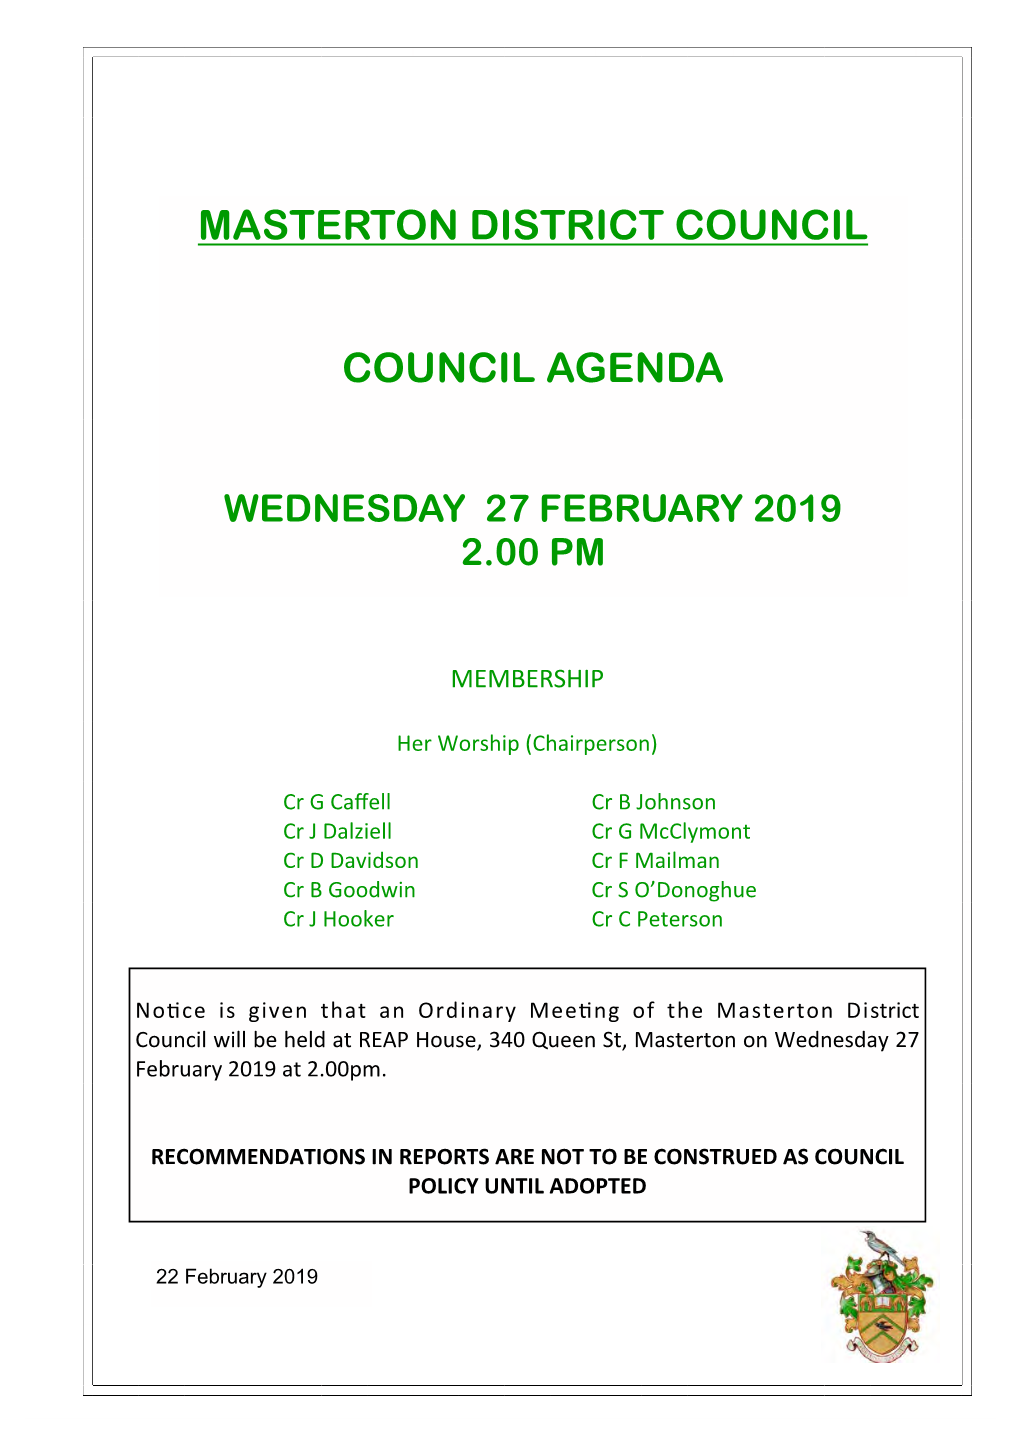 Masterton District Council Council Agenda